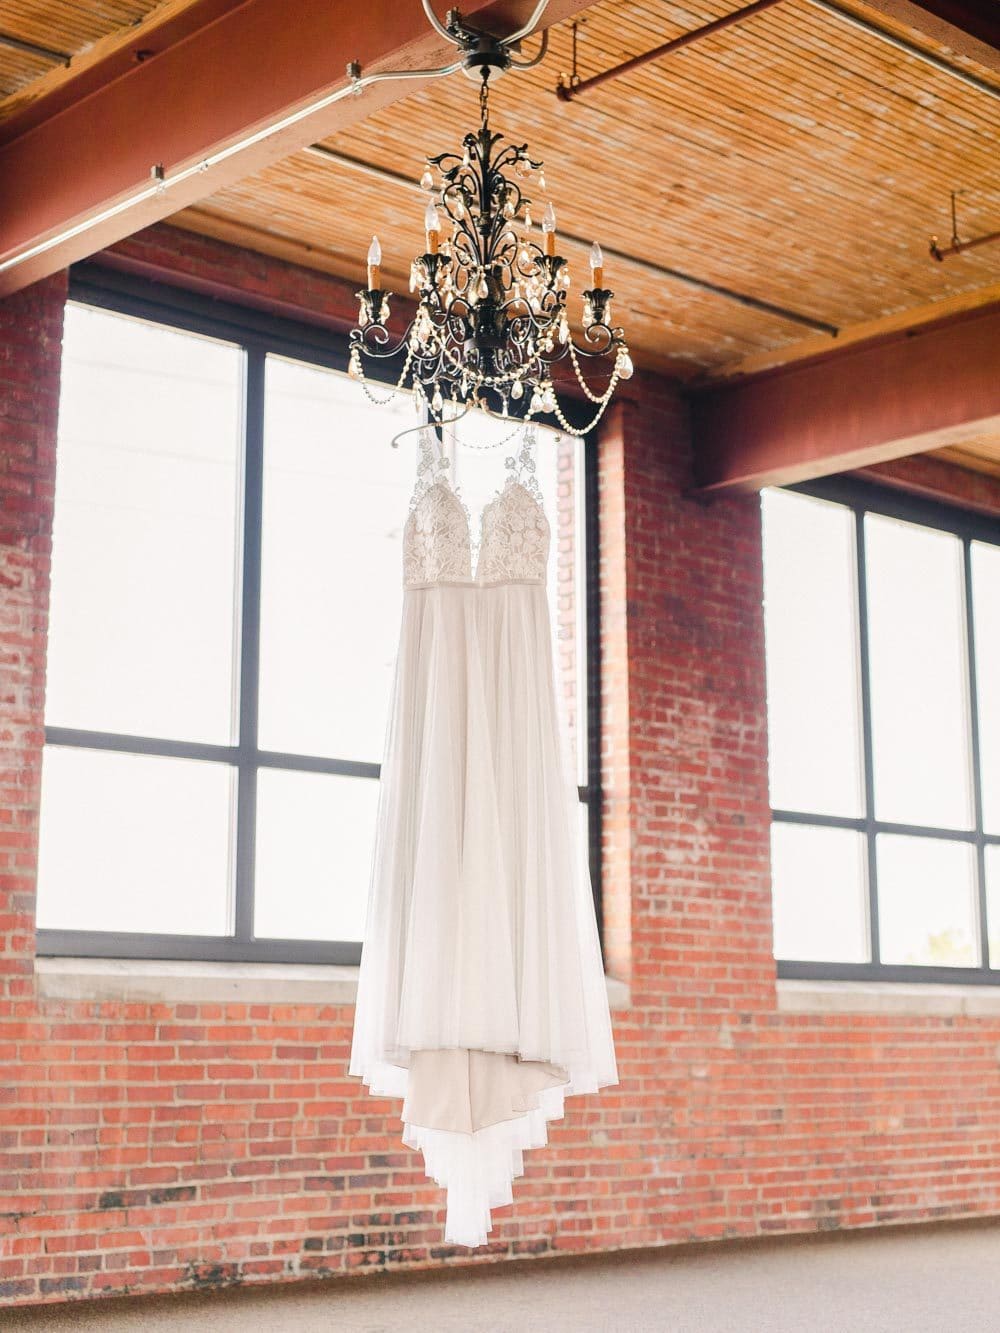 Ariel international center wedding, dress hanging from a chandelier 